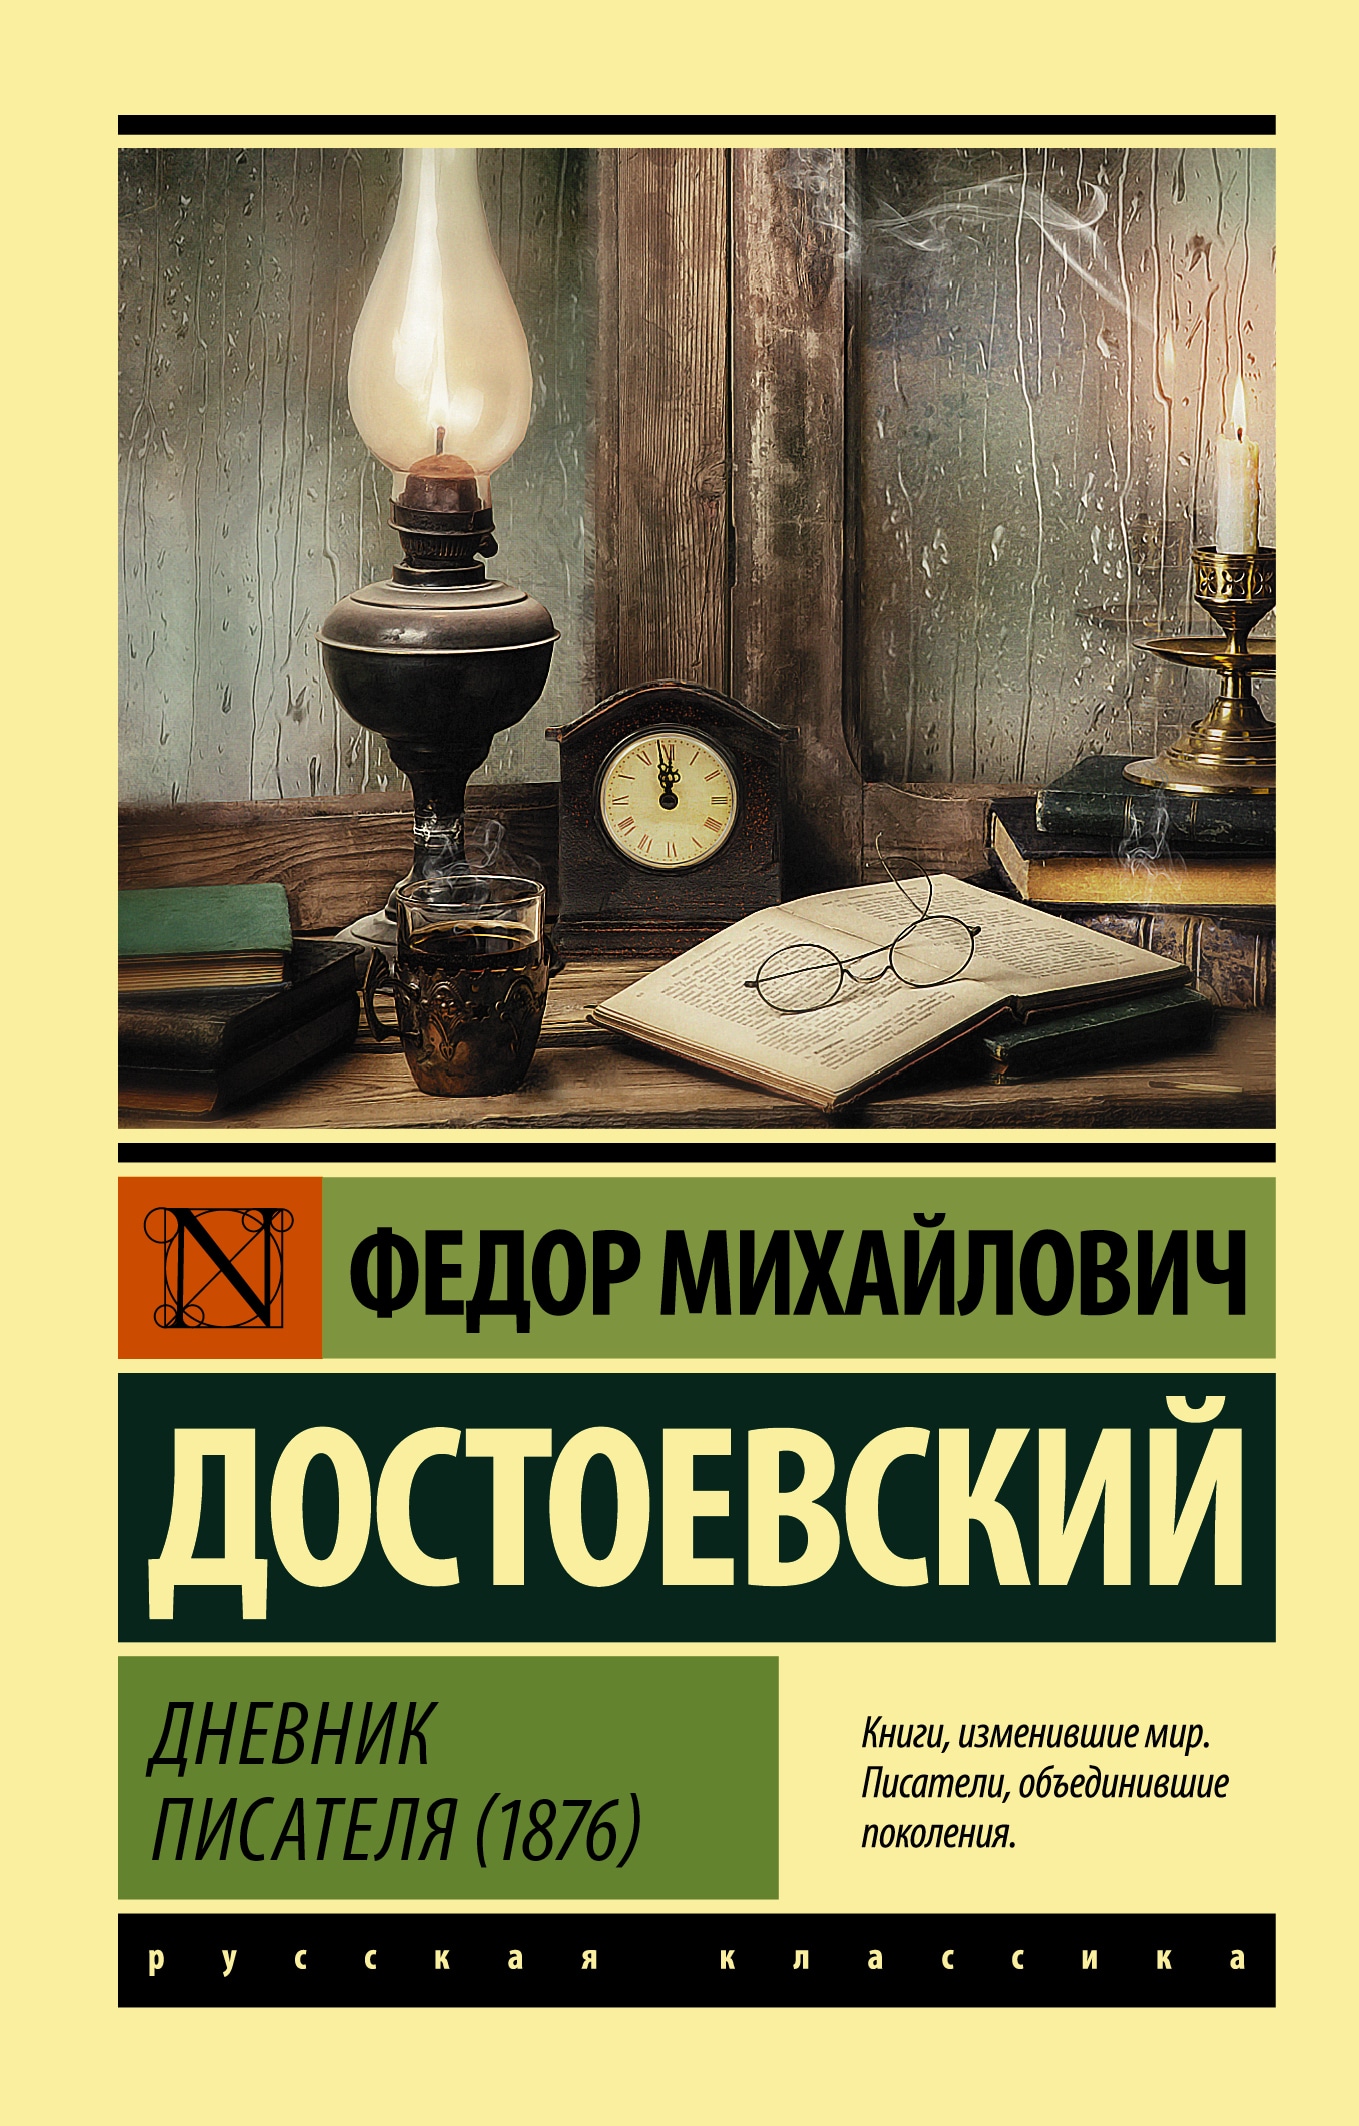 Книга «Дневник писателя (1876)» Федор Достоевский — 2022 г.